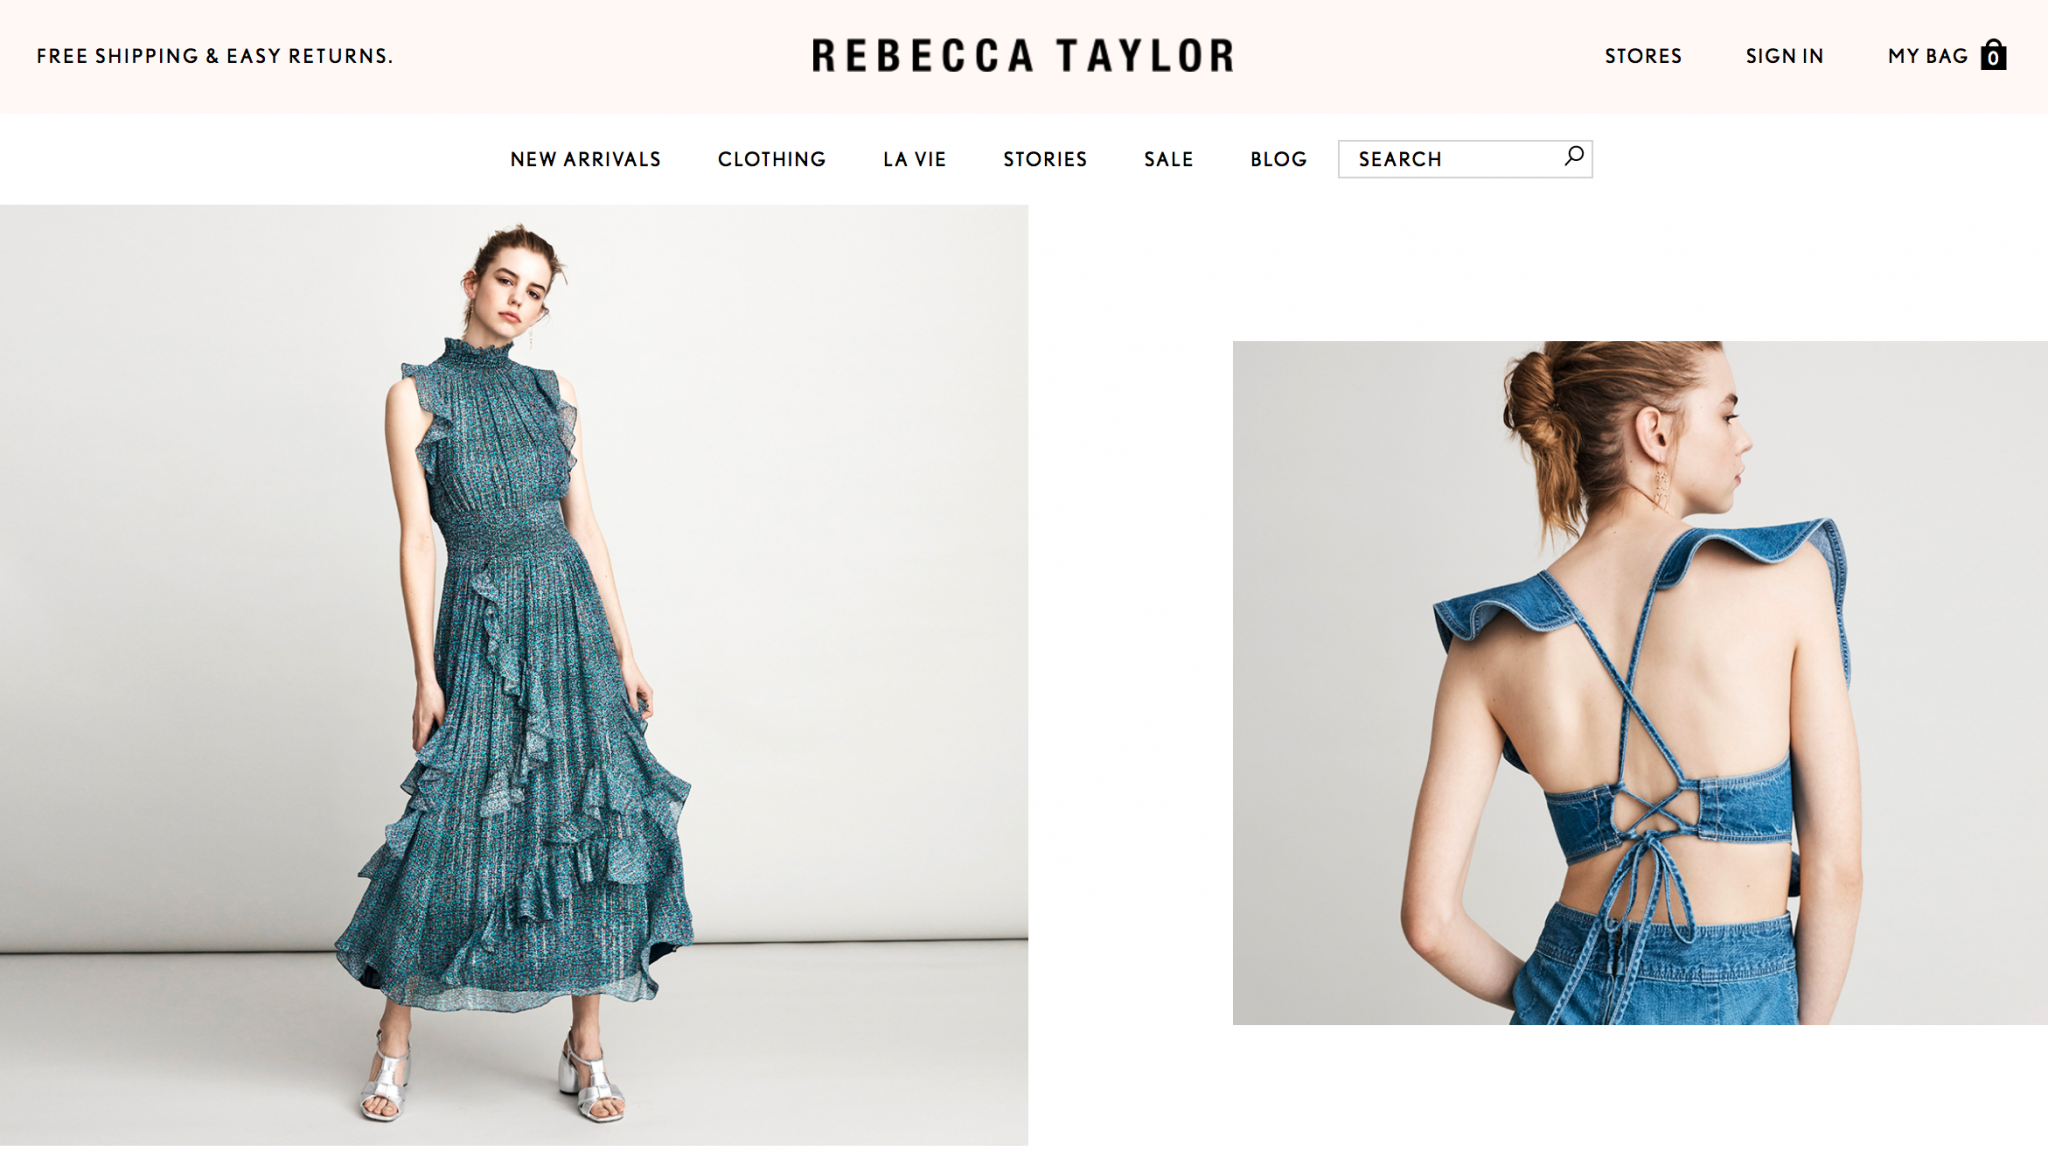 Rebecca Taylor（レベッカテイラー）の通販を日本で購入する手順をご紹介 | アリスの海外通販｜海外ファッション・海外コスメ通販の購入方法